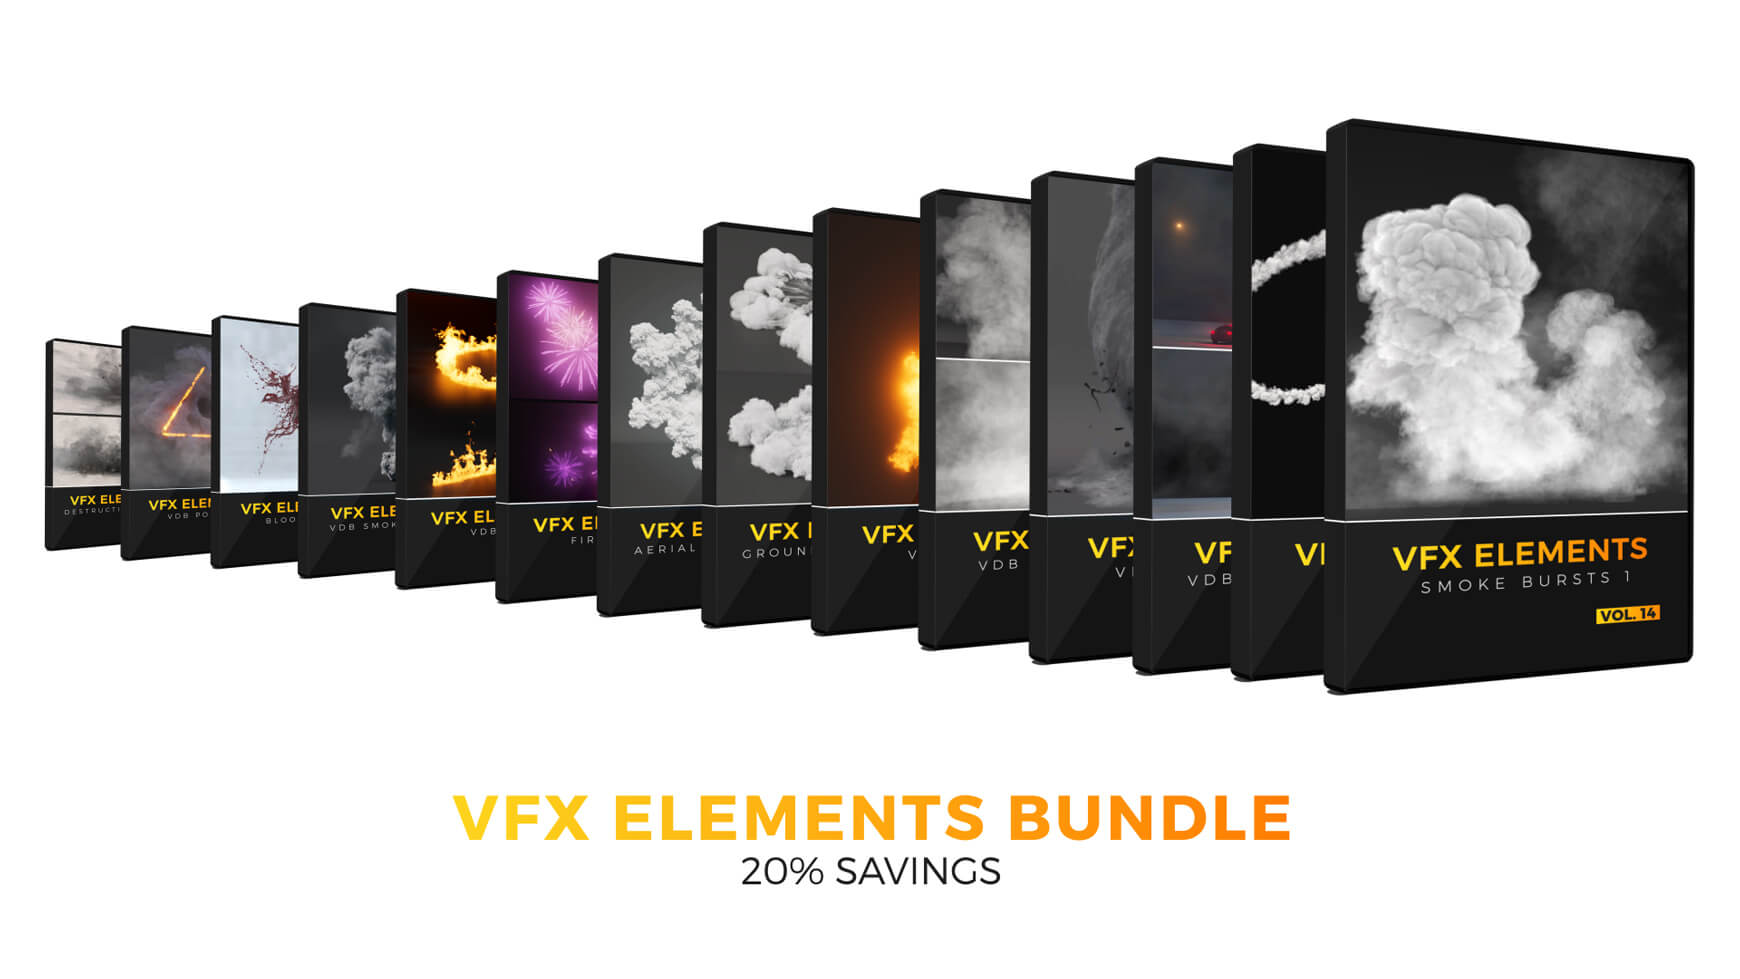 VFX Elements Volume 014 Smoke Bursts